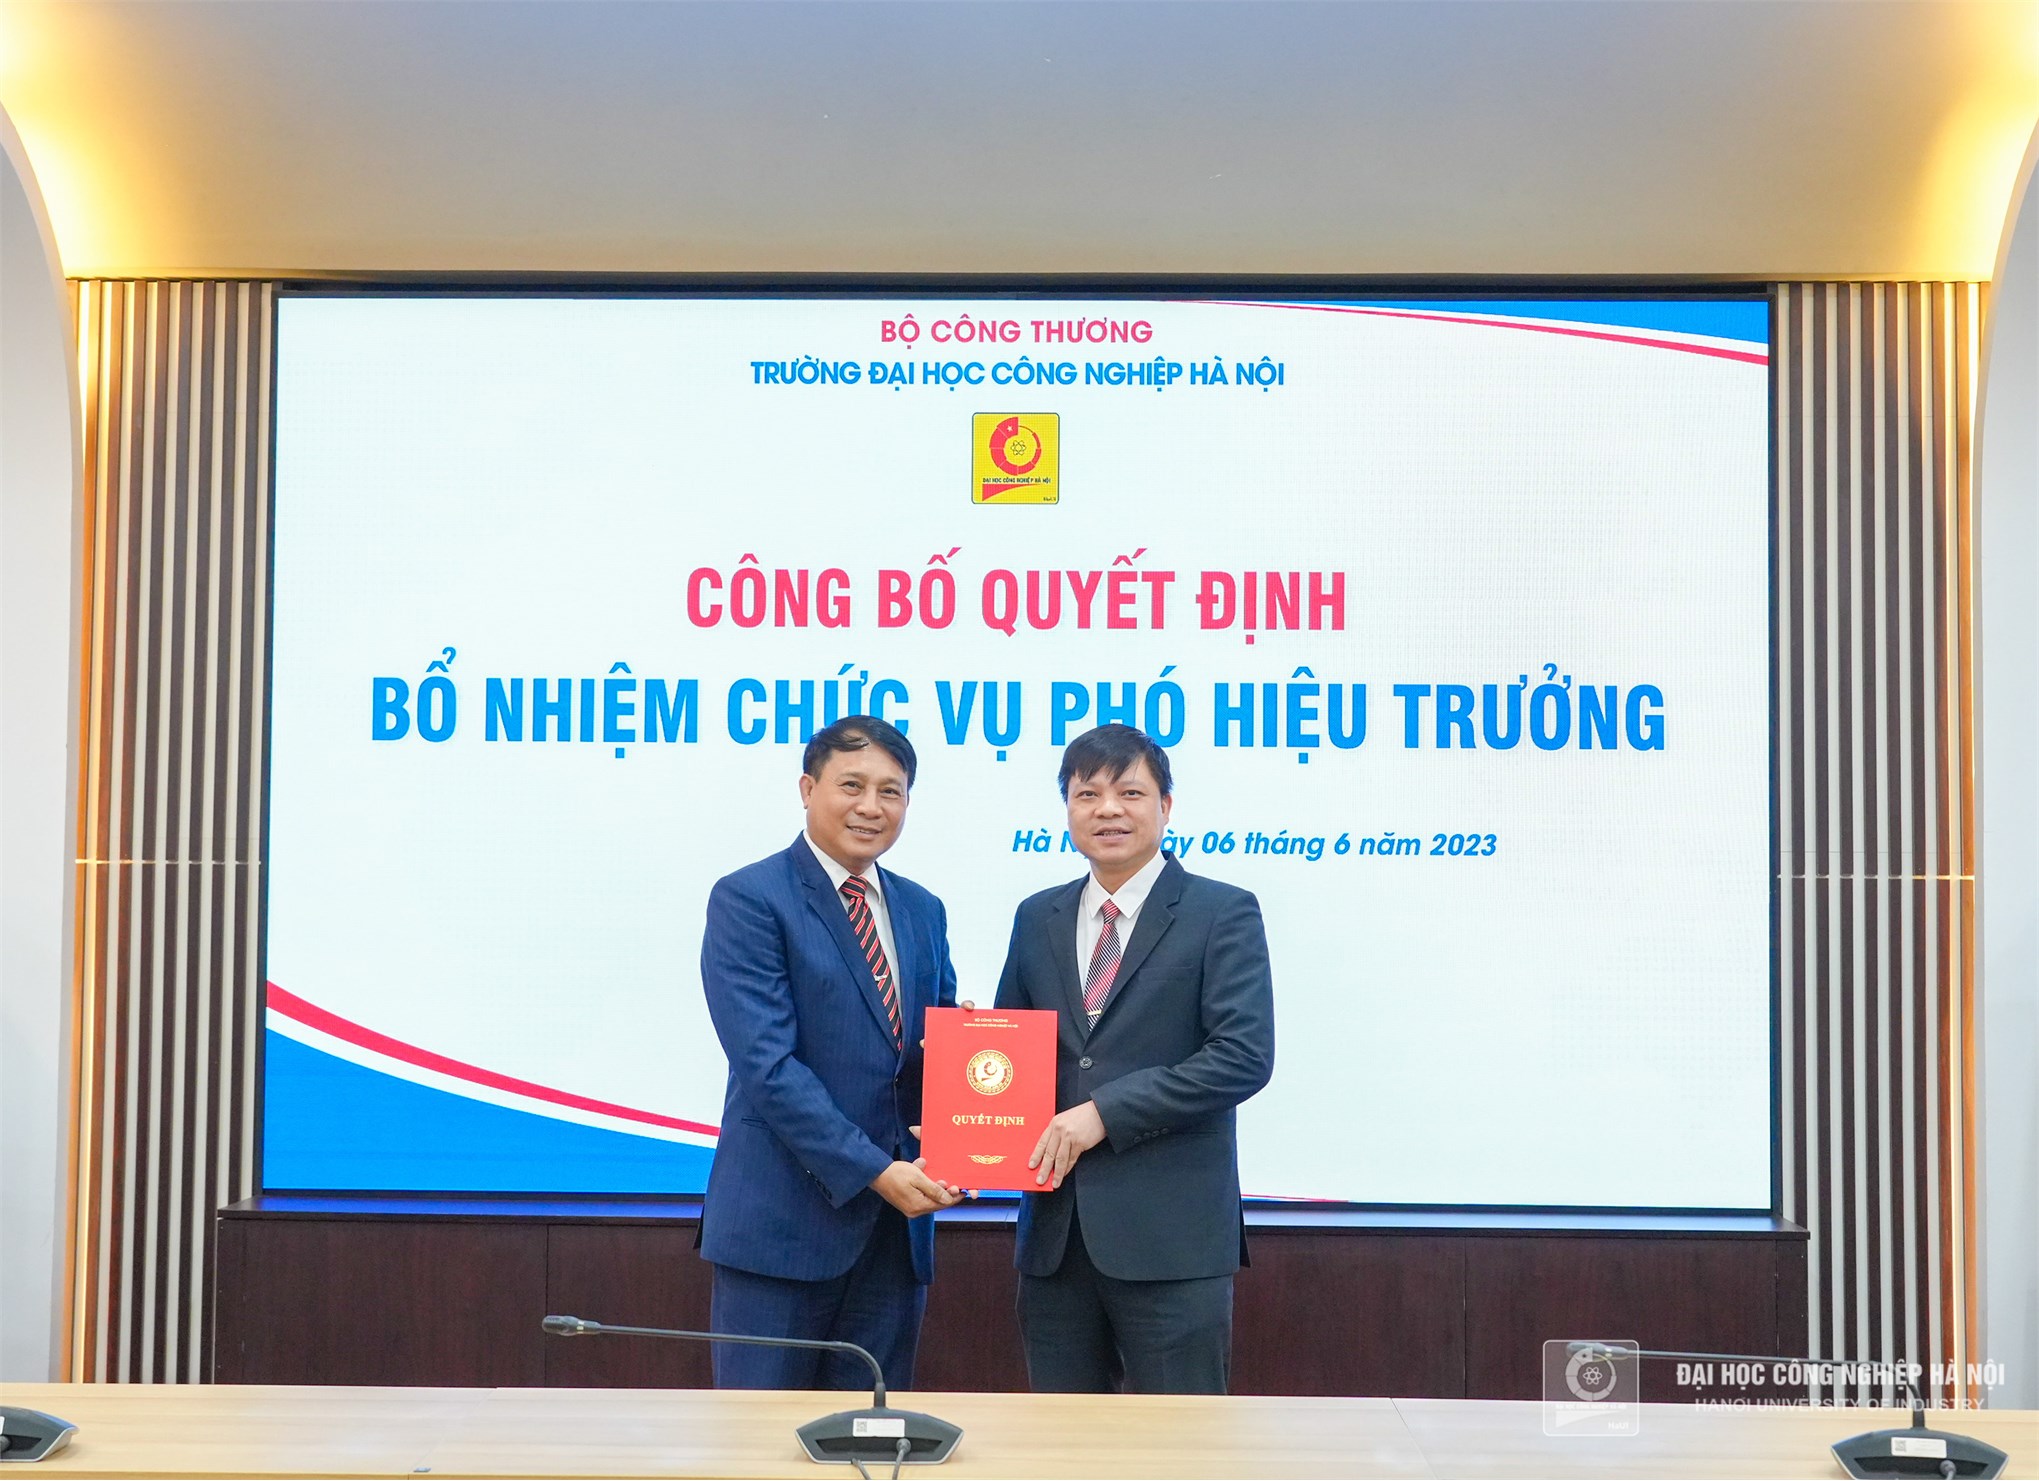 Trao Quyết định bổ nhiệm cán bộ lãnh đạo, quản lý Trường Đại học Công nghiệp Hà Nội